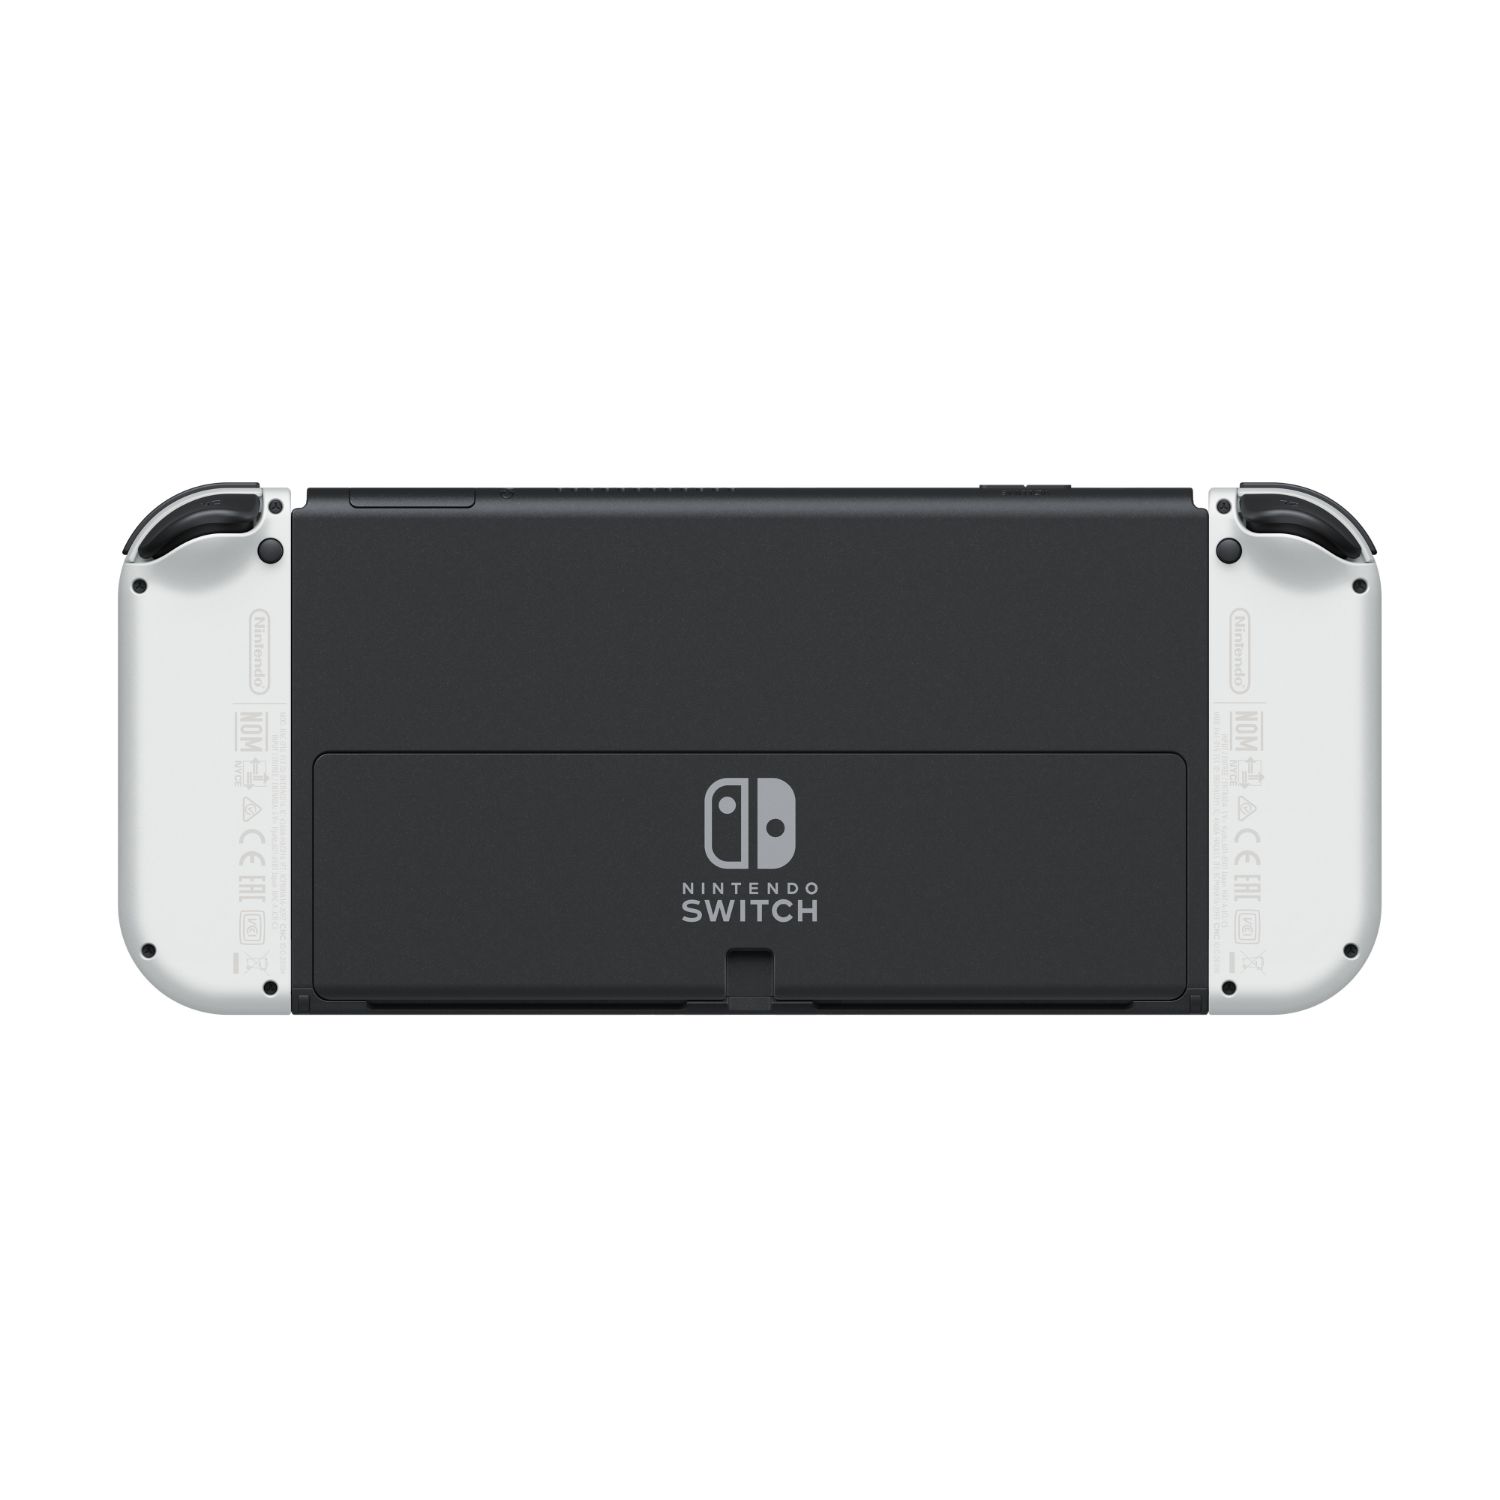 10007454 - Consola Nintendo Switch OLED 7